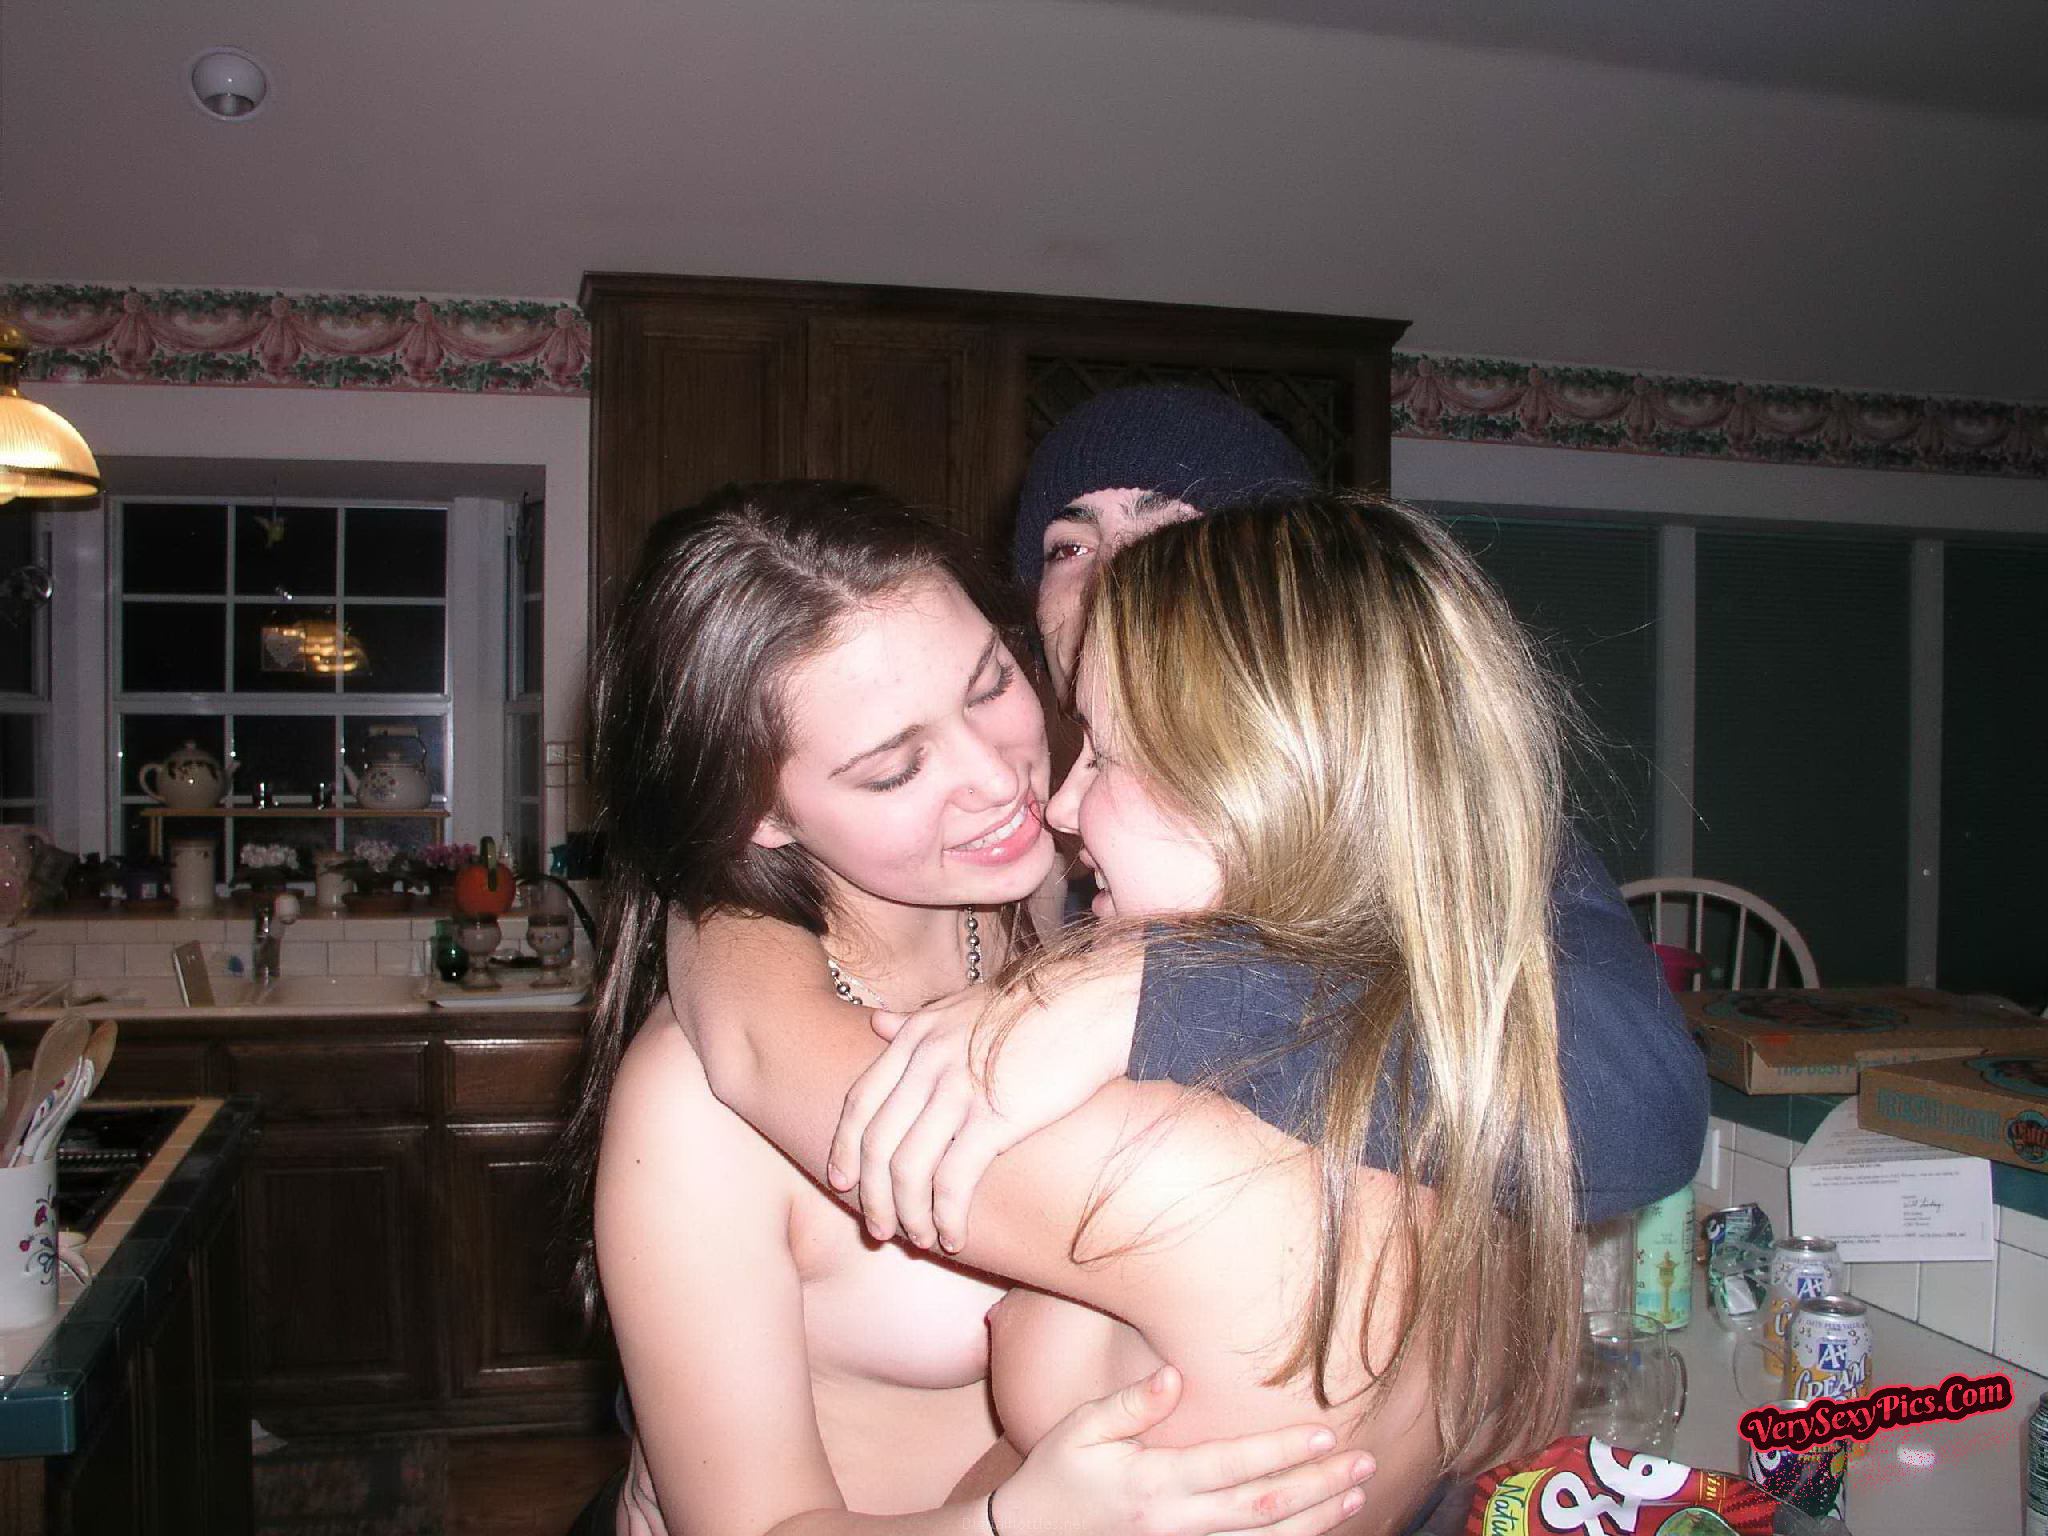 callum rowland share amateur teen lesbians nude photos